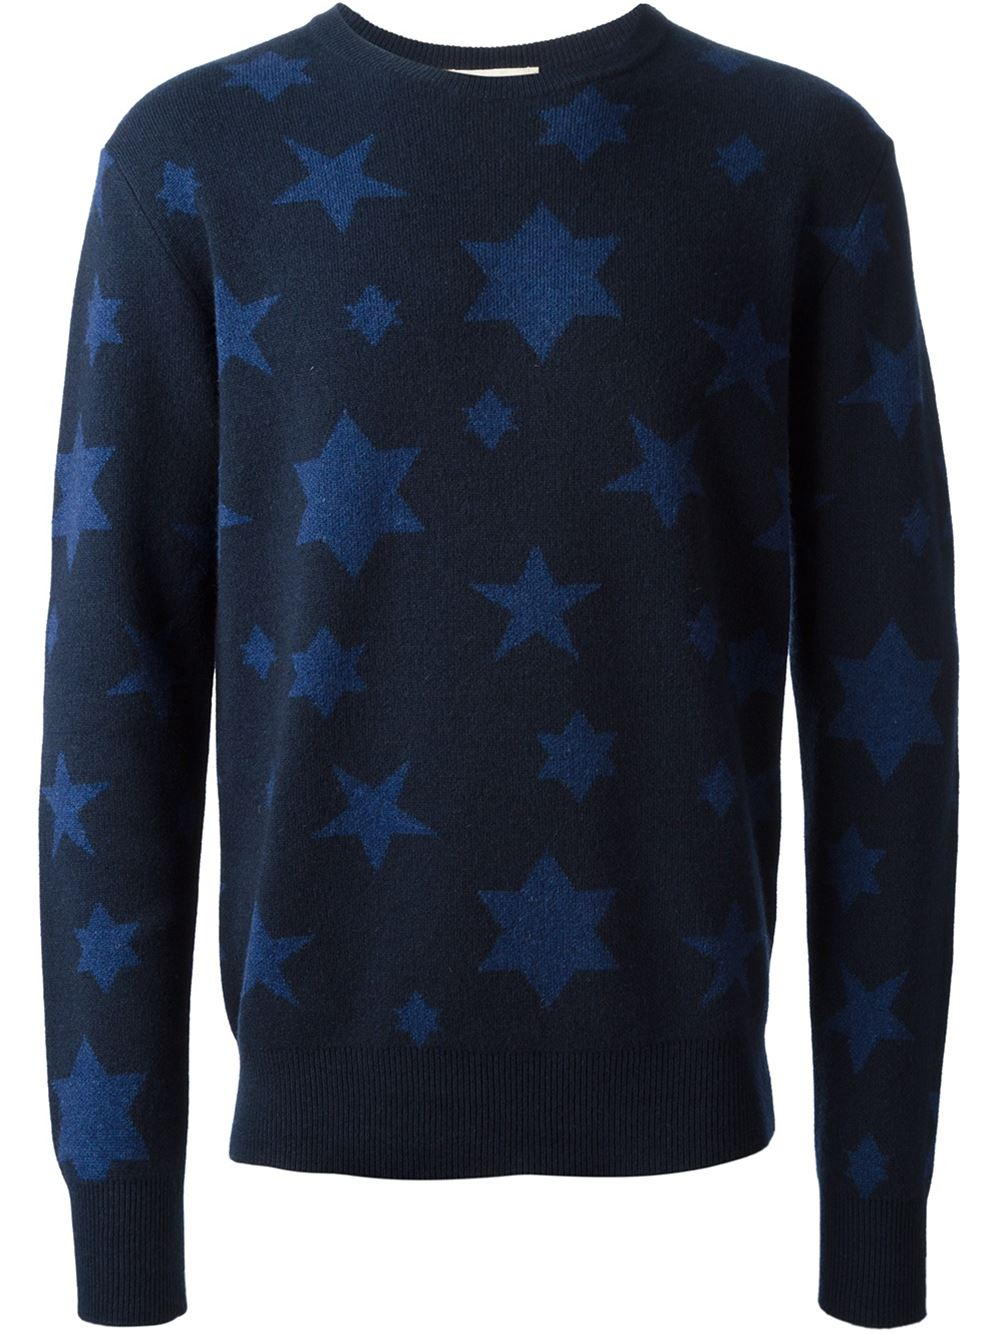 Lyst - Ymc Star Pattern Sweater in Blue for Men